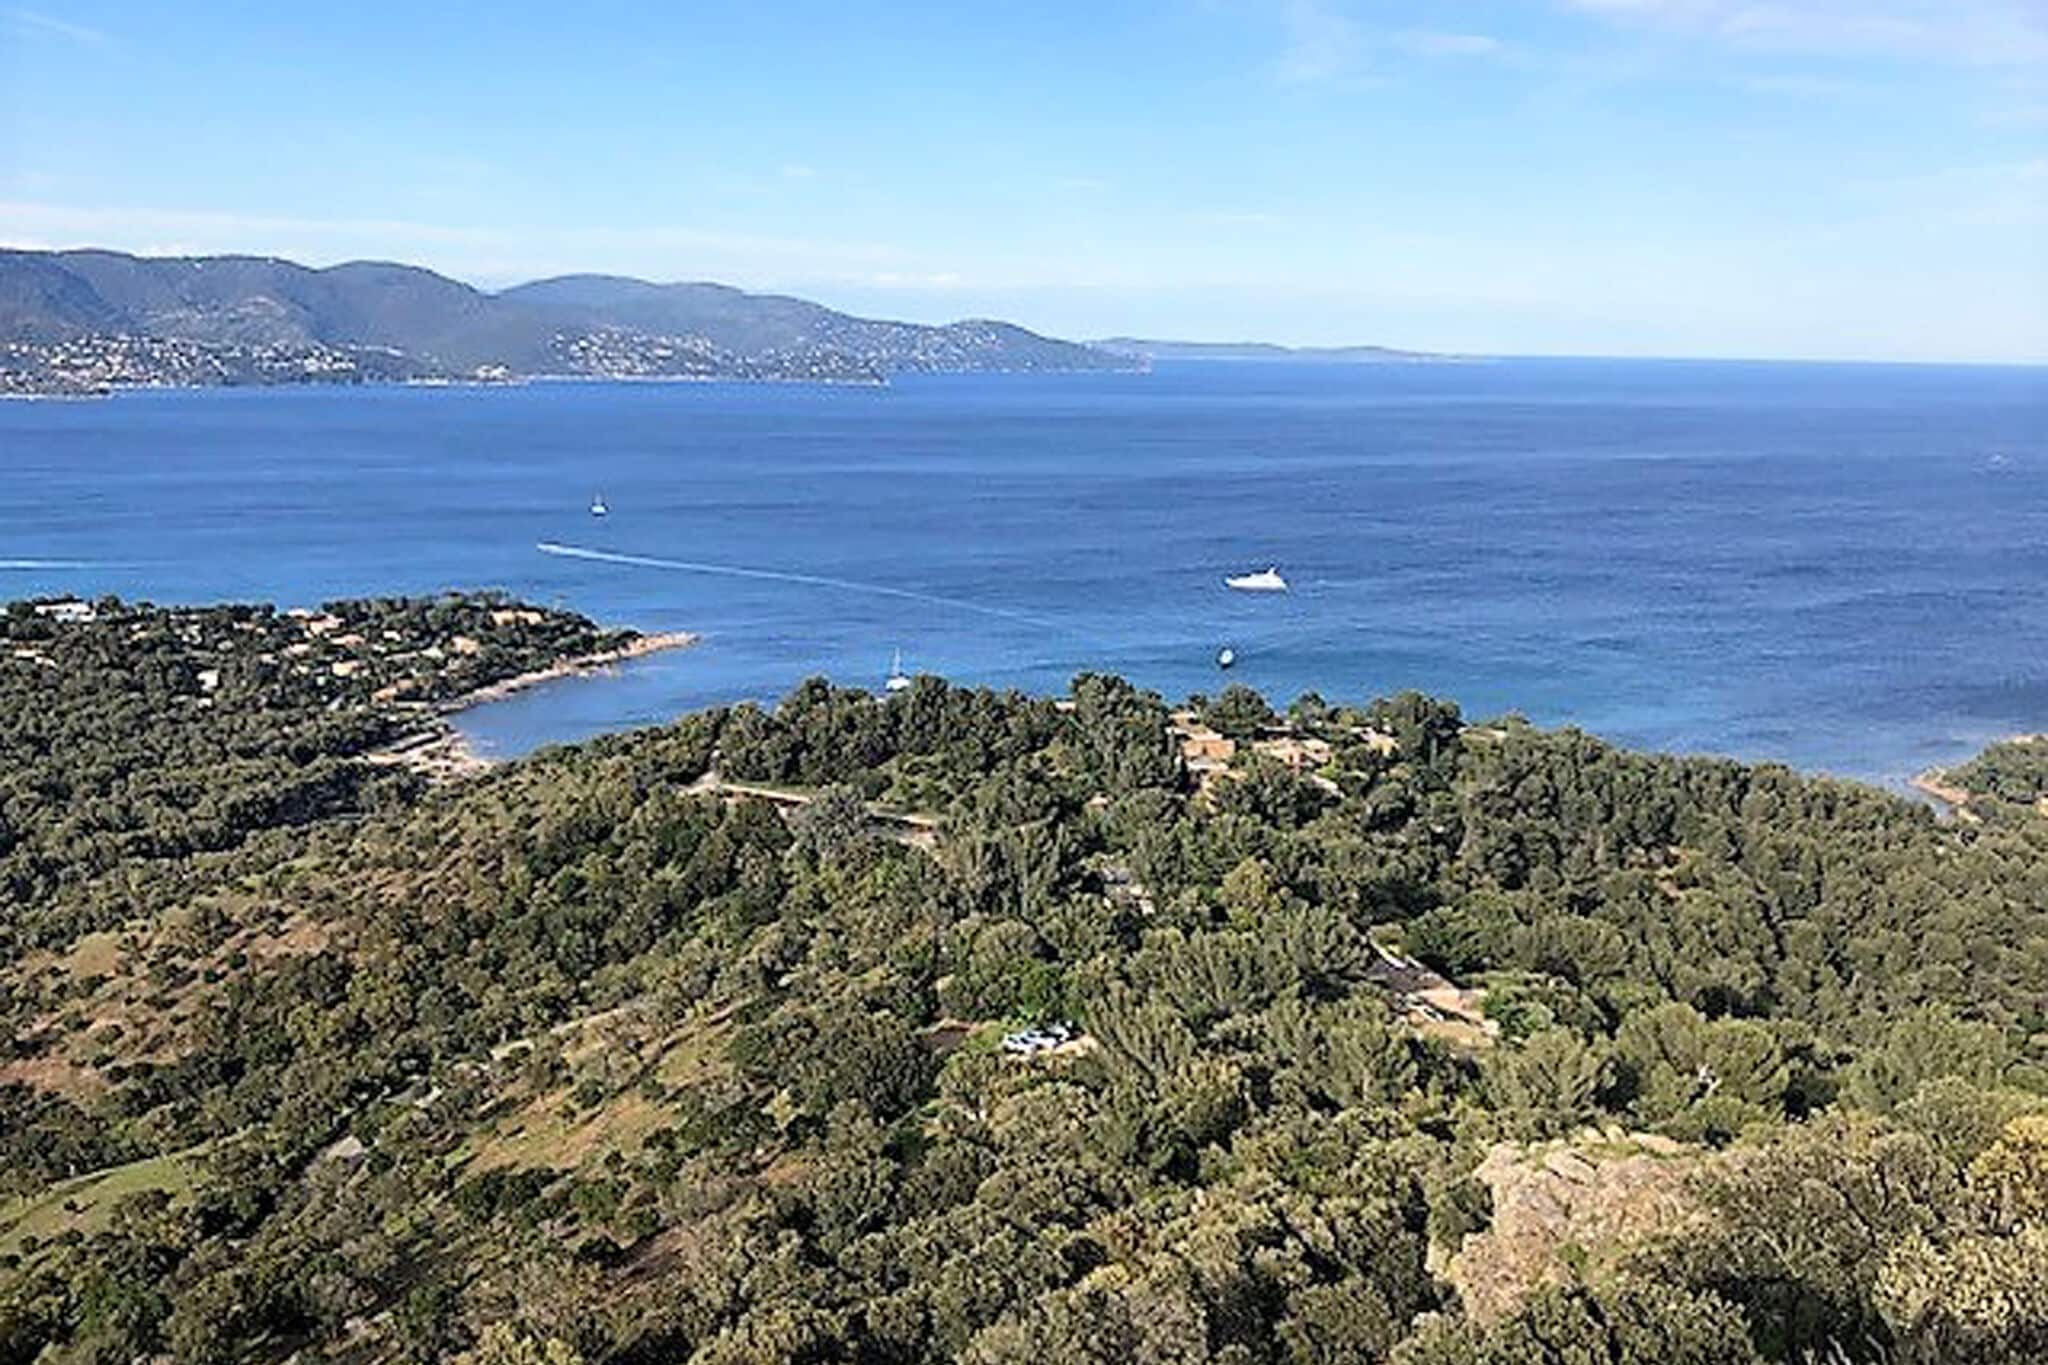 Beleving tussen ongerepte natuur en Côte d'Azur, villa met waanzinnig uitzicht